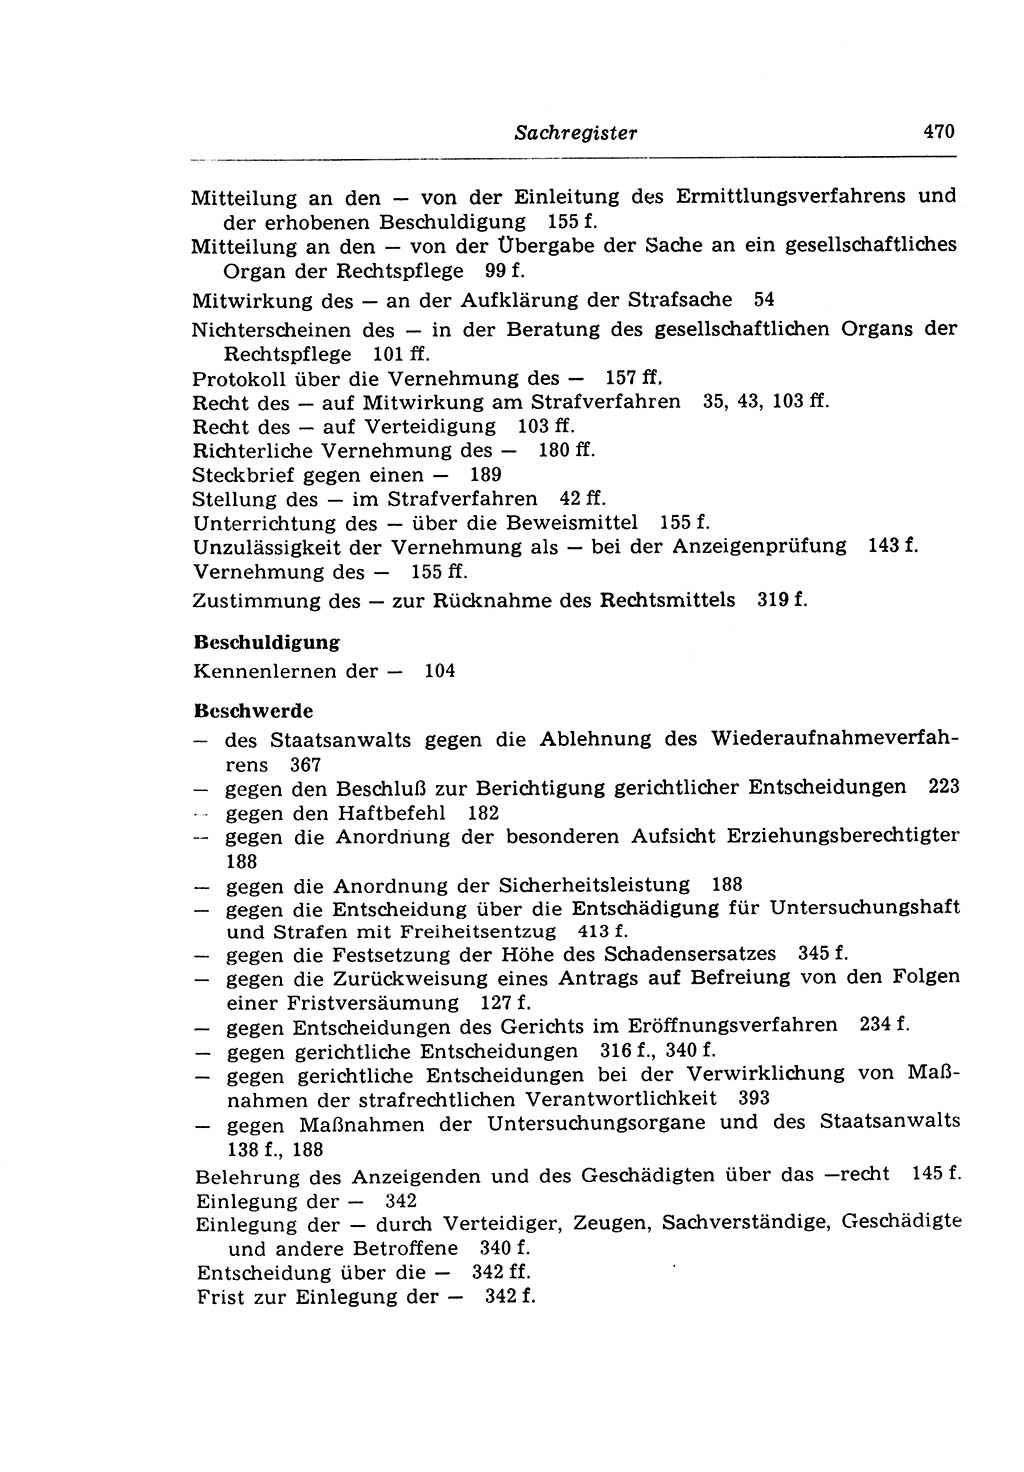 Strafprozeßrecht der DDR (Deutsche Demokratische Republik), Lehrkommentar zur Strafprozeßordnung (StPO) 1968, Seite 470 (Strafprozeßr. DDR Lehrkomm. StPO 19688, S. 470)